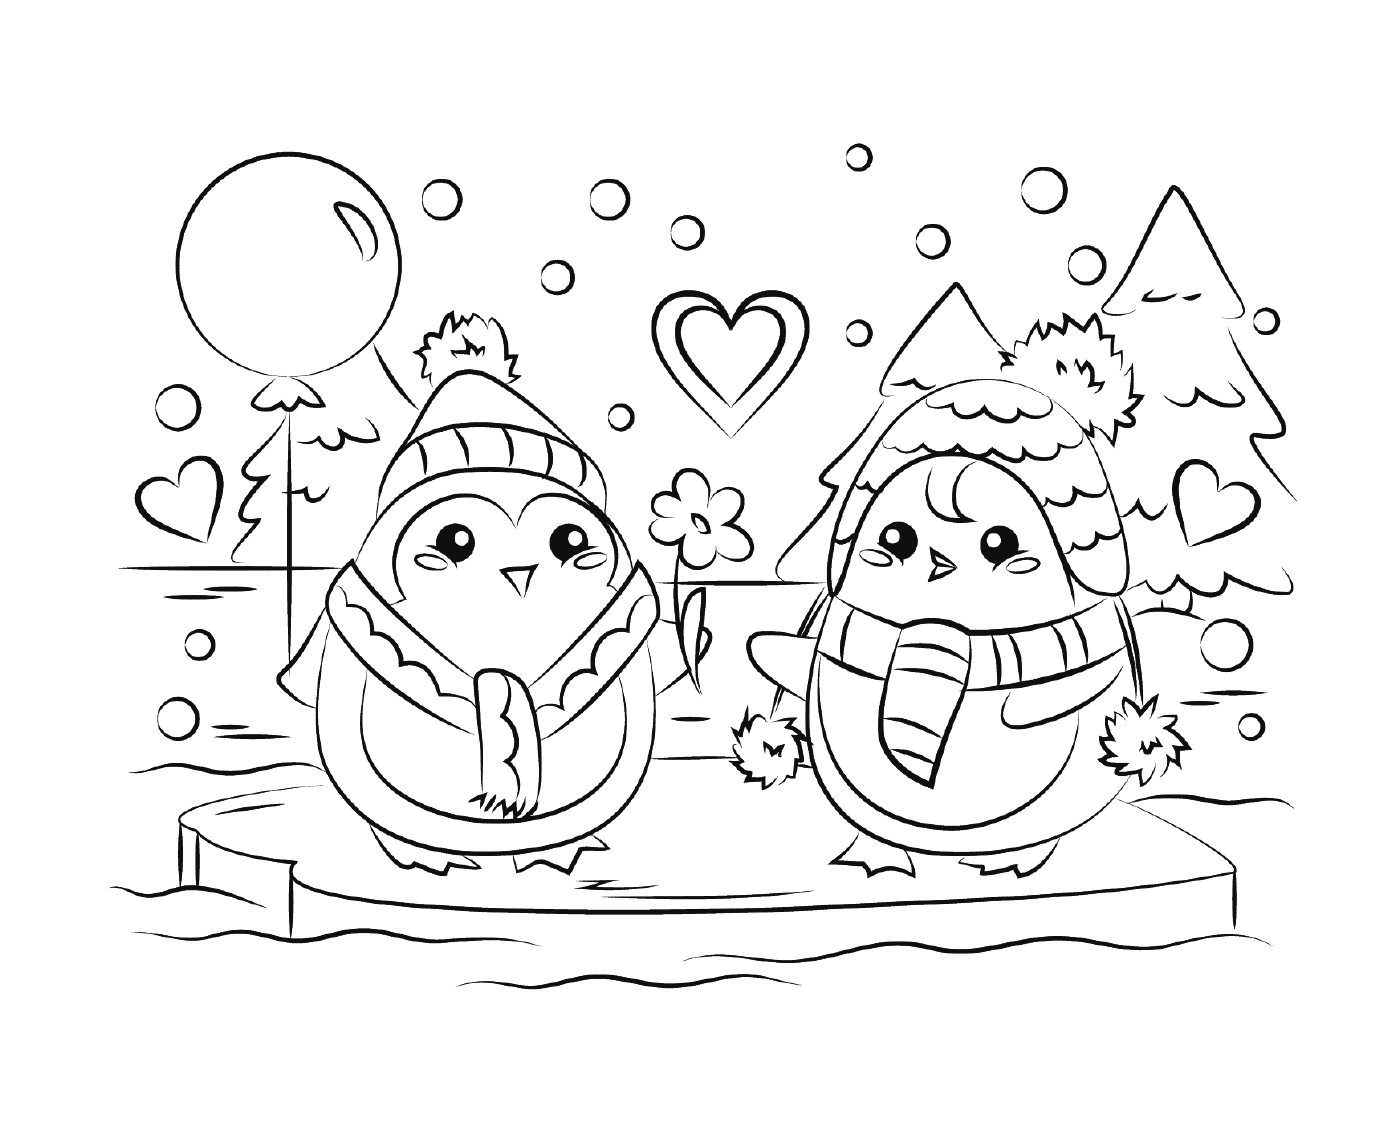  Pinguins de amor, neve macia 